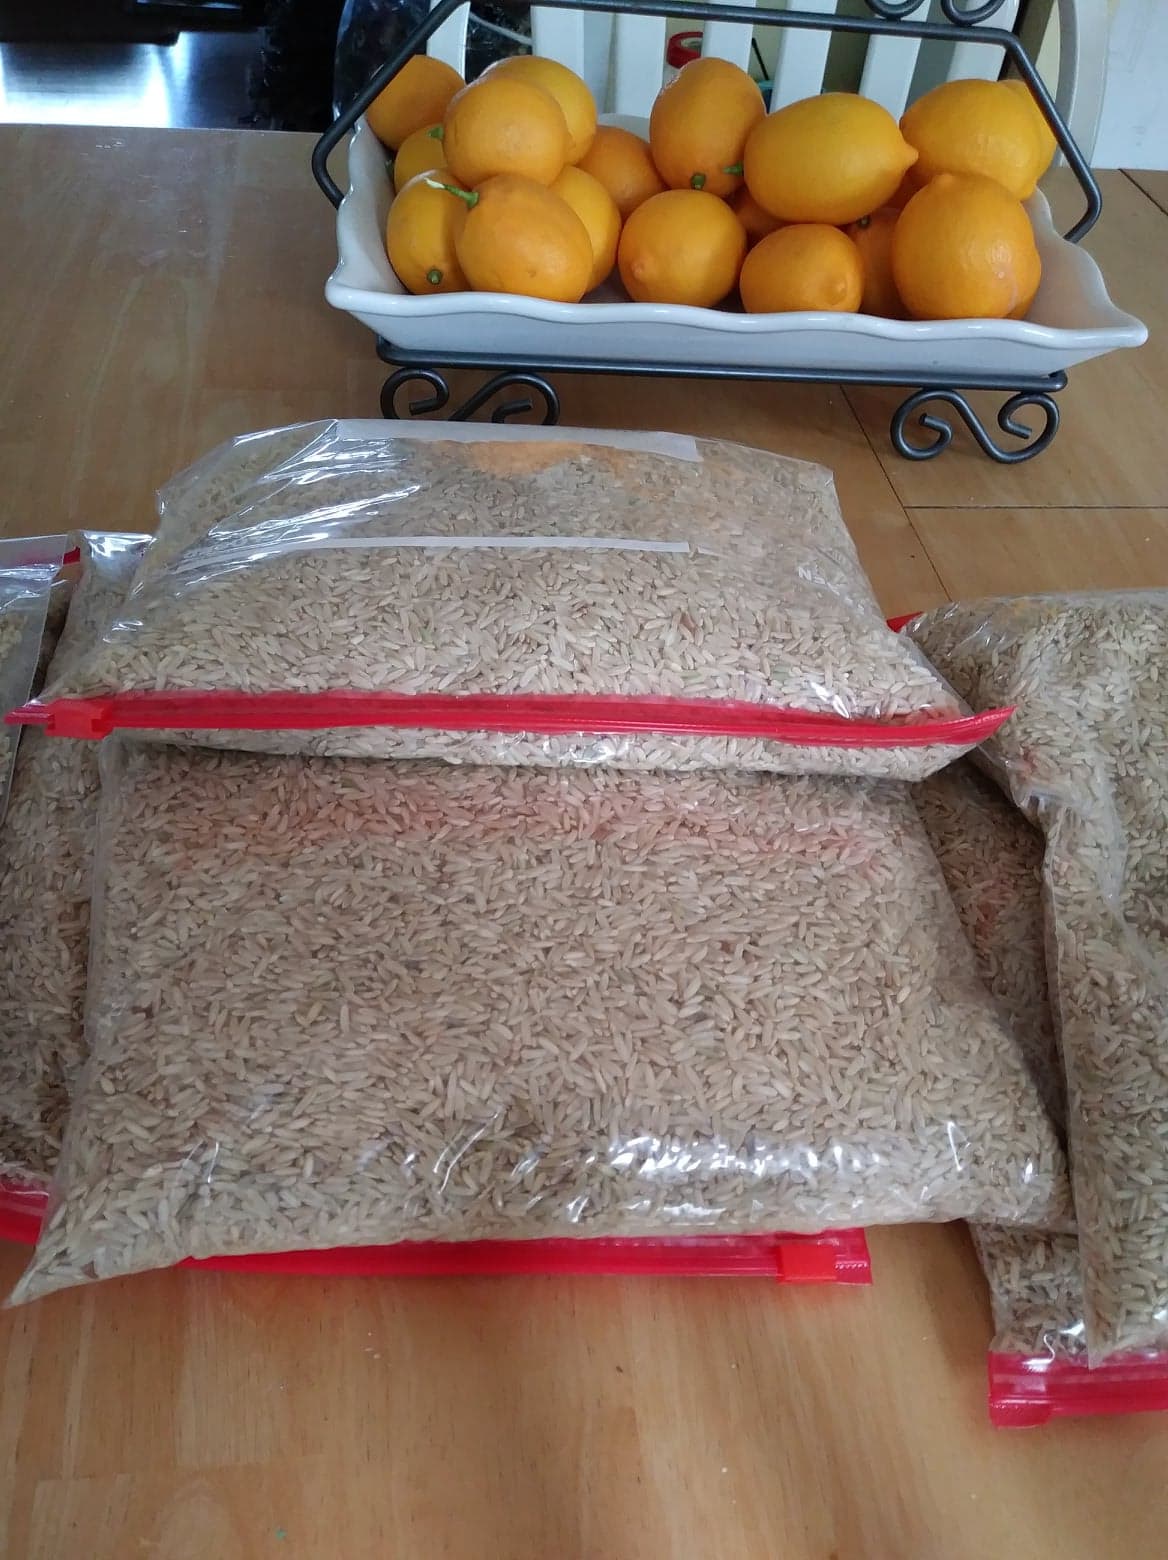 Rice in ziploc bags